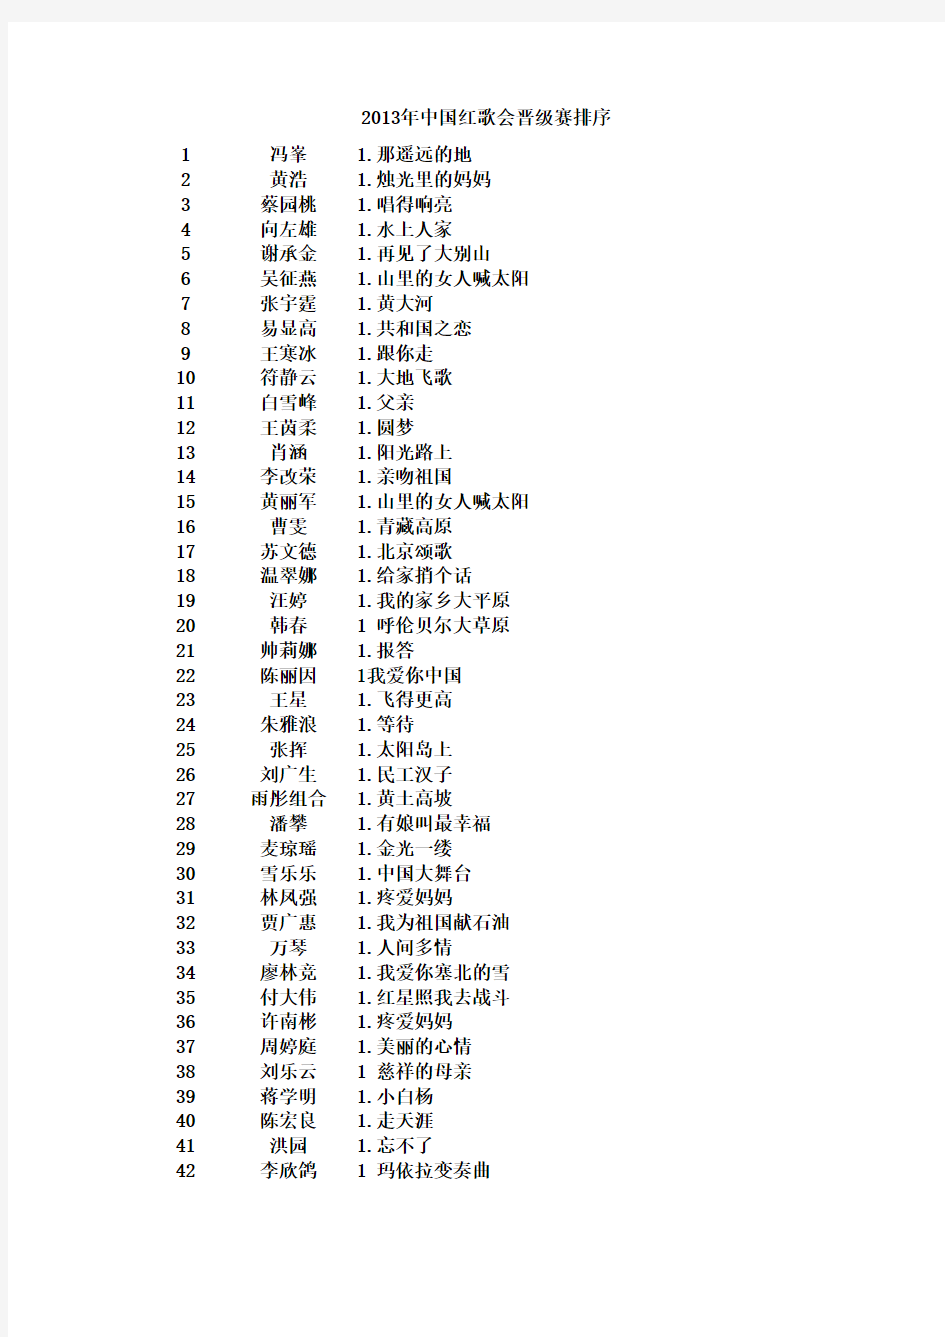 朱久文：2013中国红歌会晋级赛排序